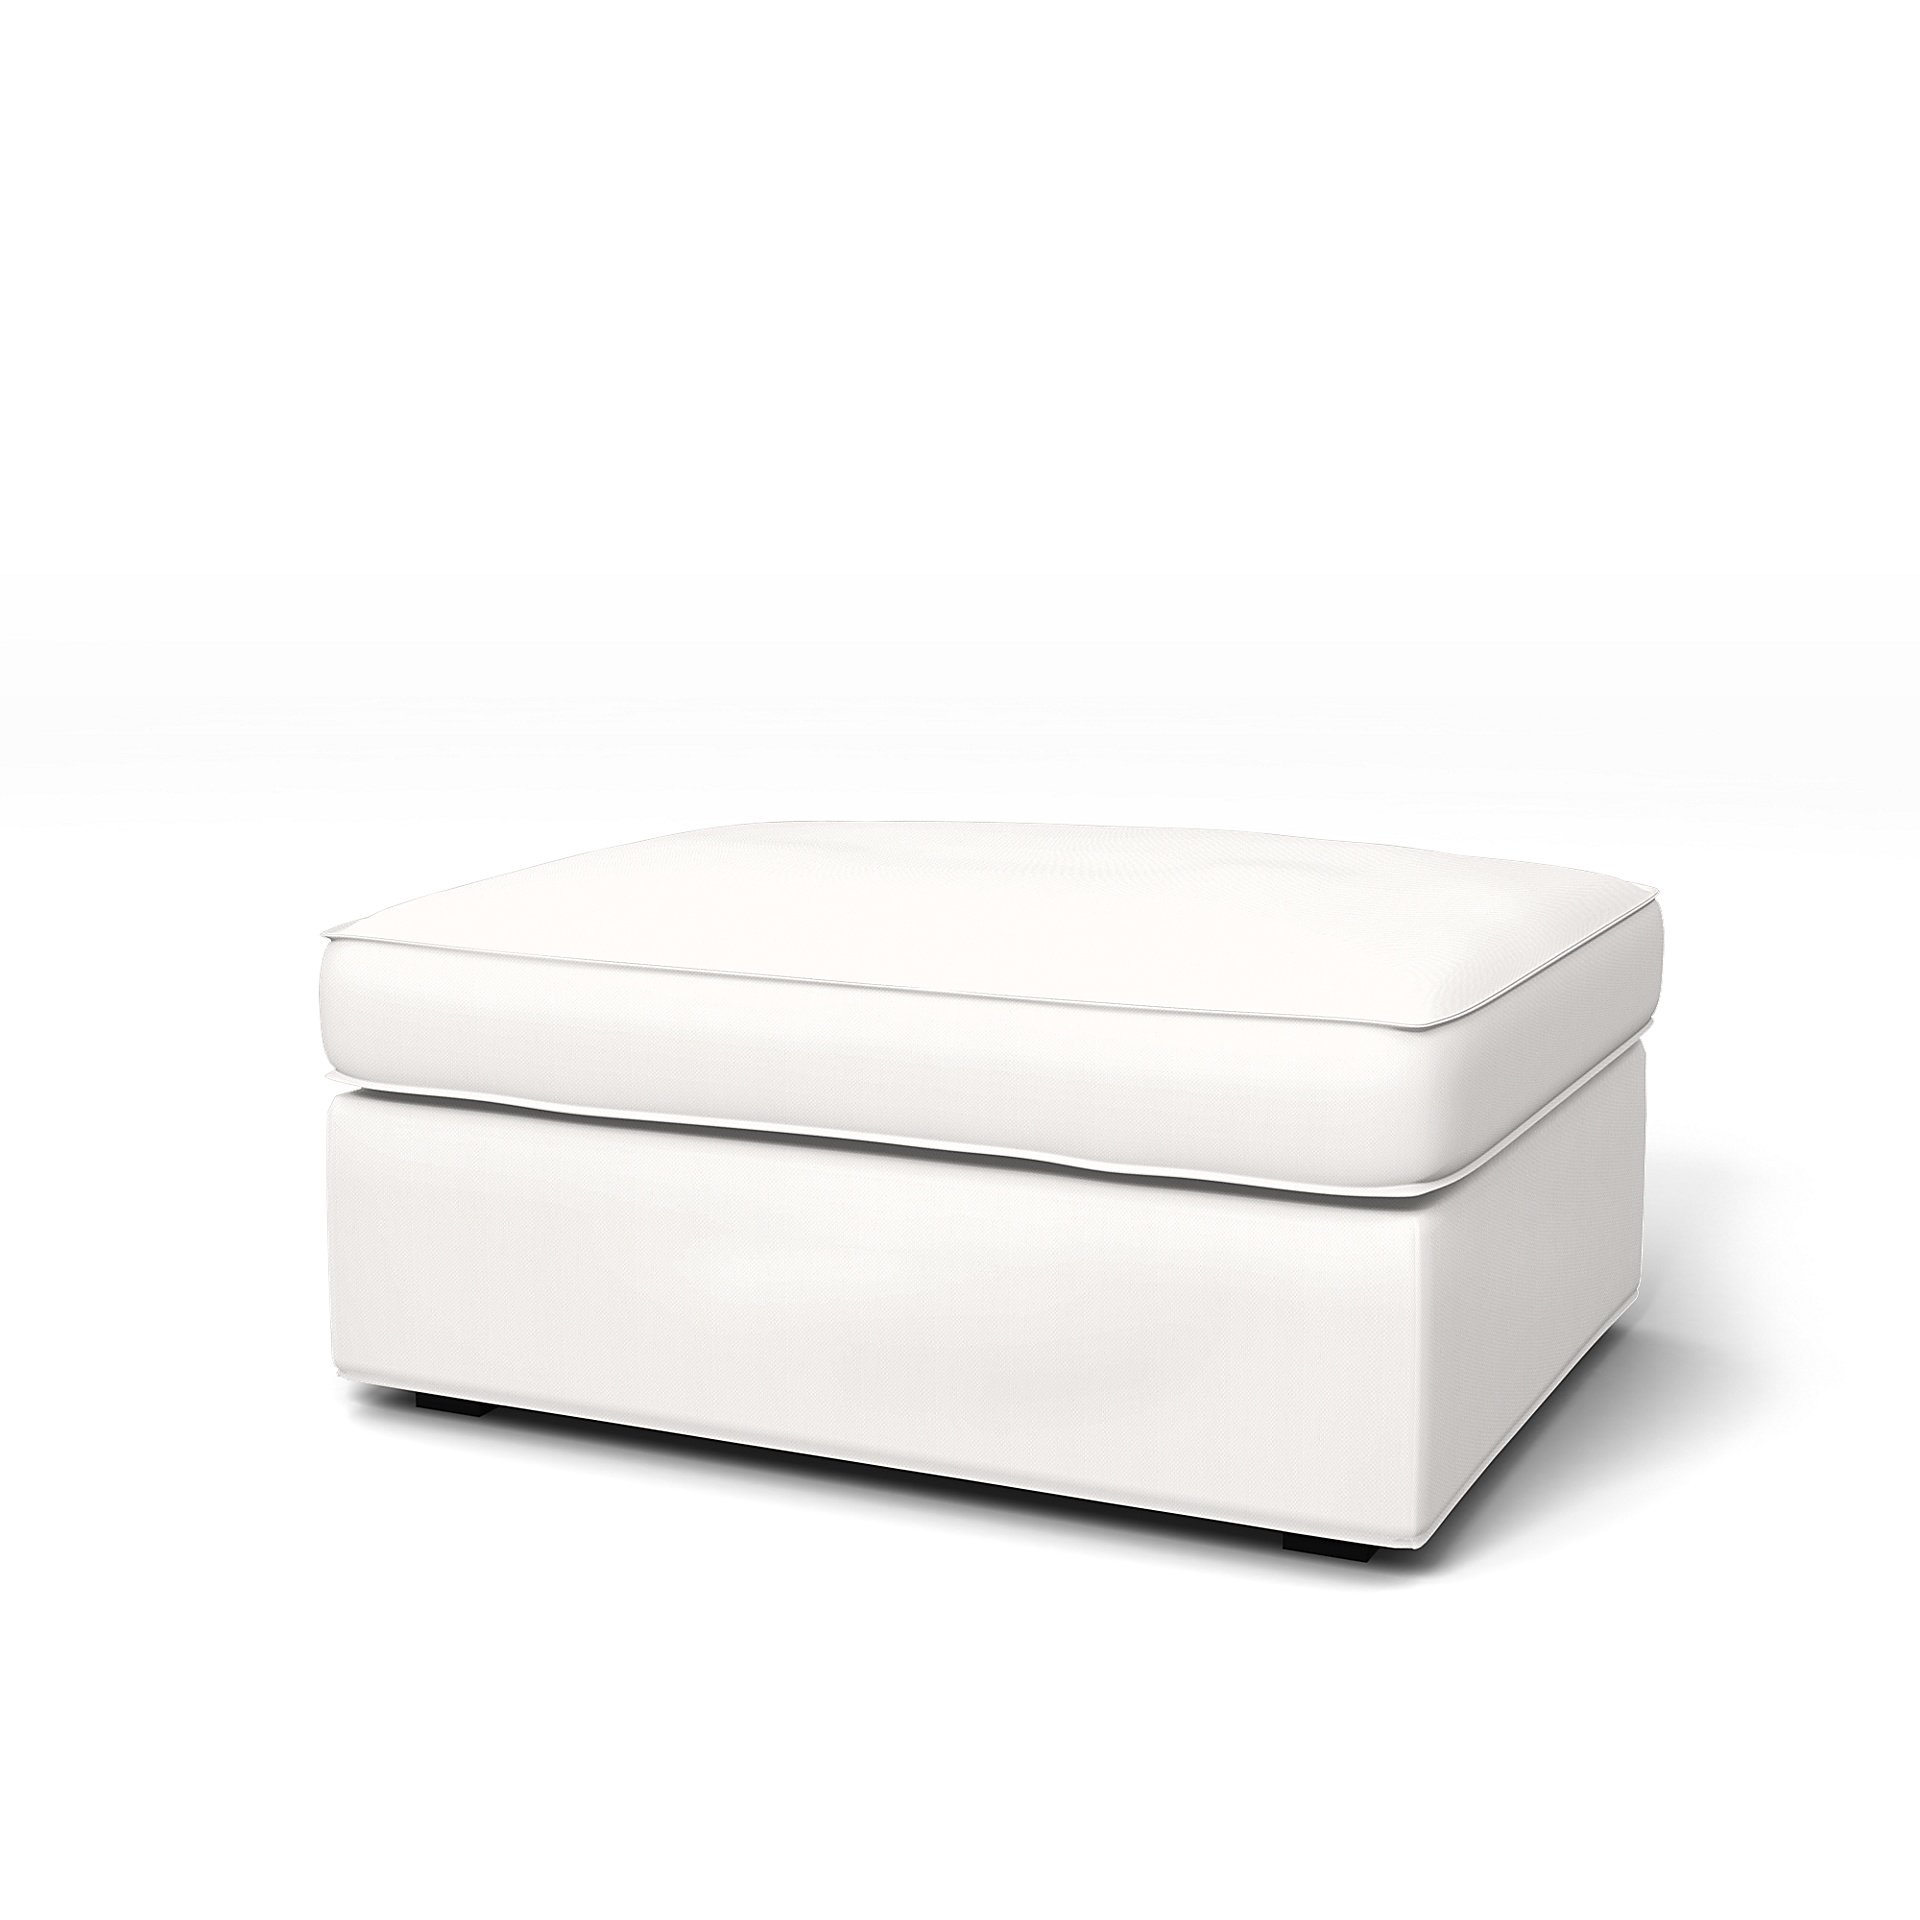 IKEA - Kivik Footstool Cover, Soft White, Linen - Bemz